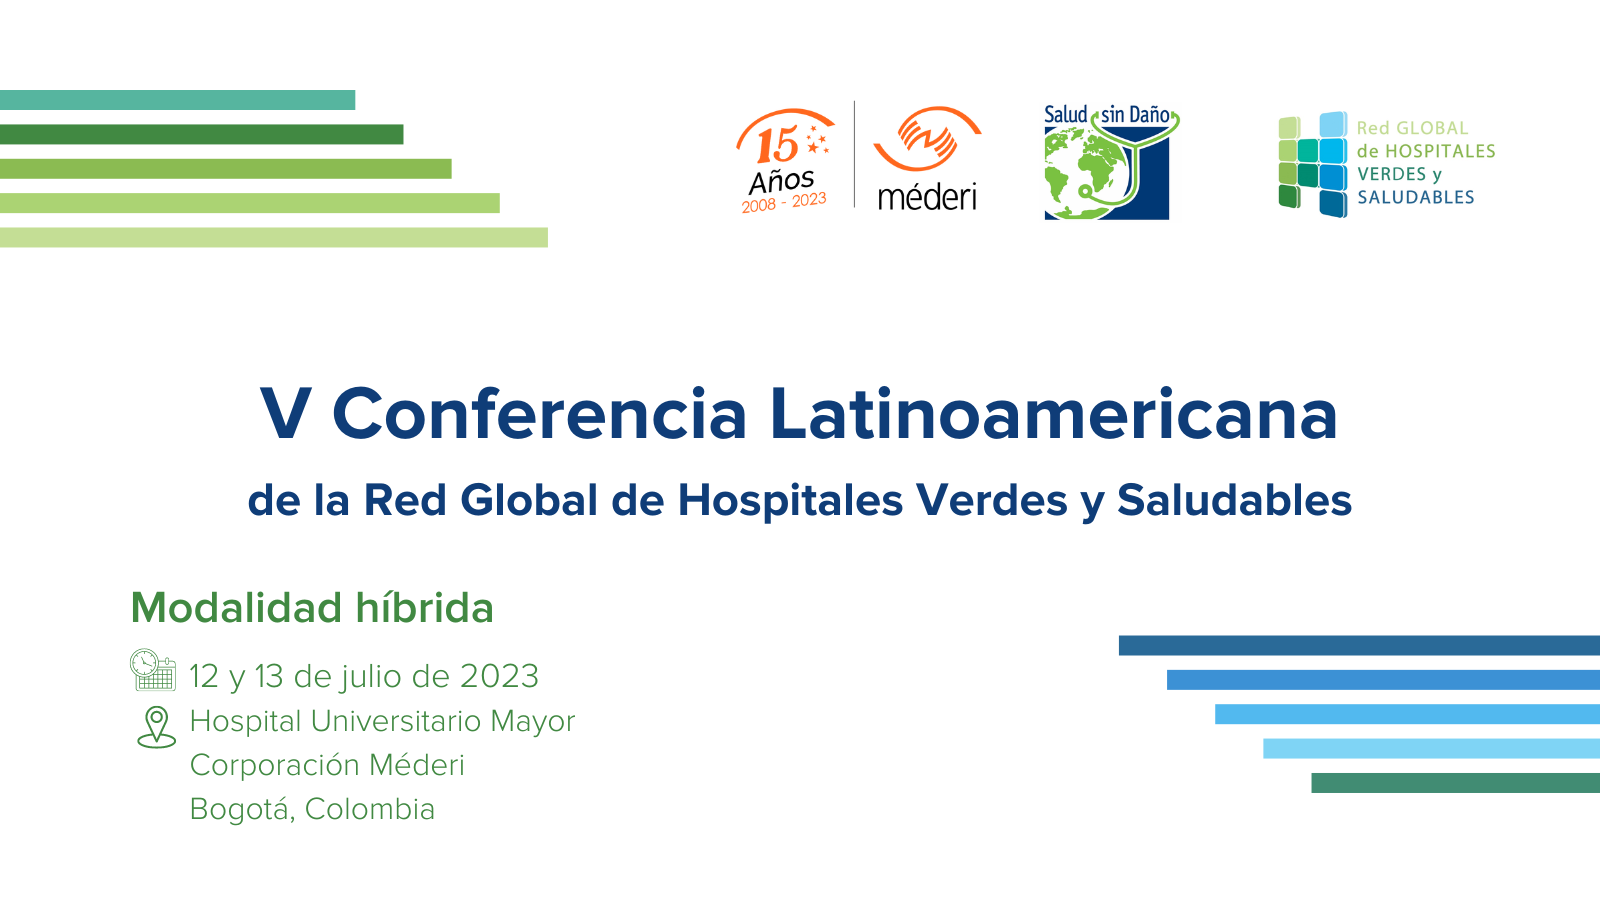 Esta imagen promociona V Conferencia Latinoamericana de la Red Global de Hospitales Verdes y Saludables, a realizarse el 12 y 13 de julio en Bogotá, Colombia. Incluye los logos de Salud sin Daño, la Red Global y la Corporación Méderi.